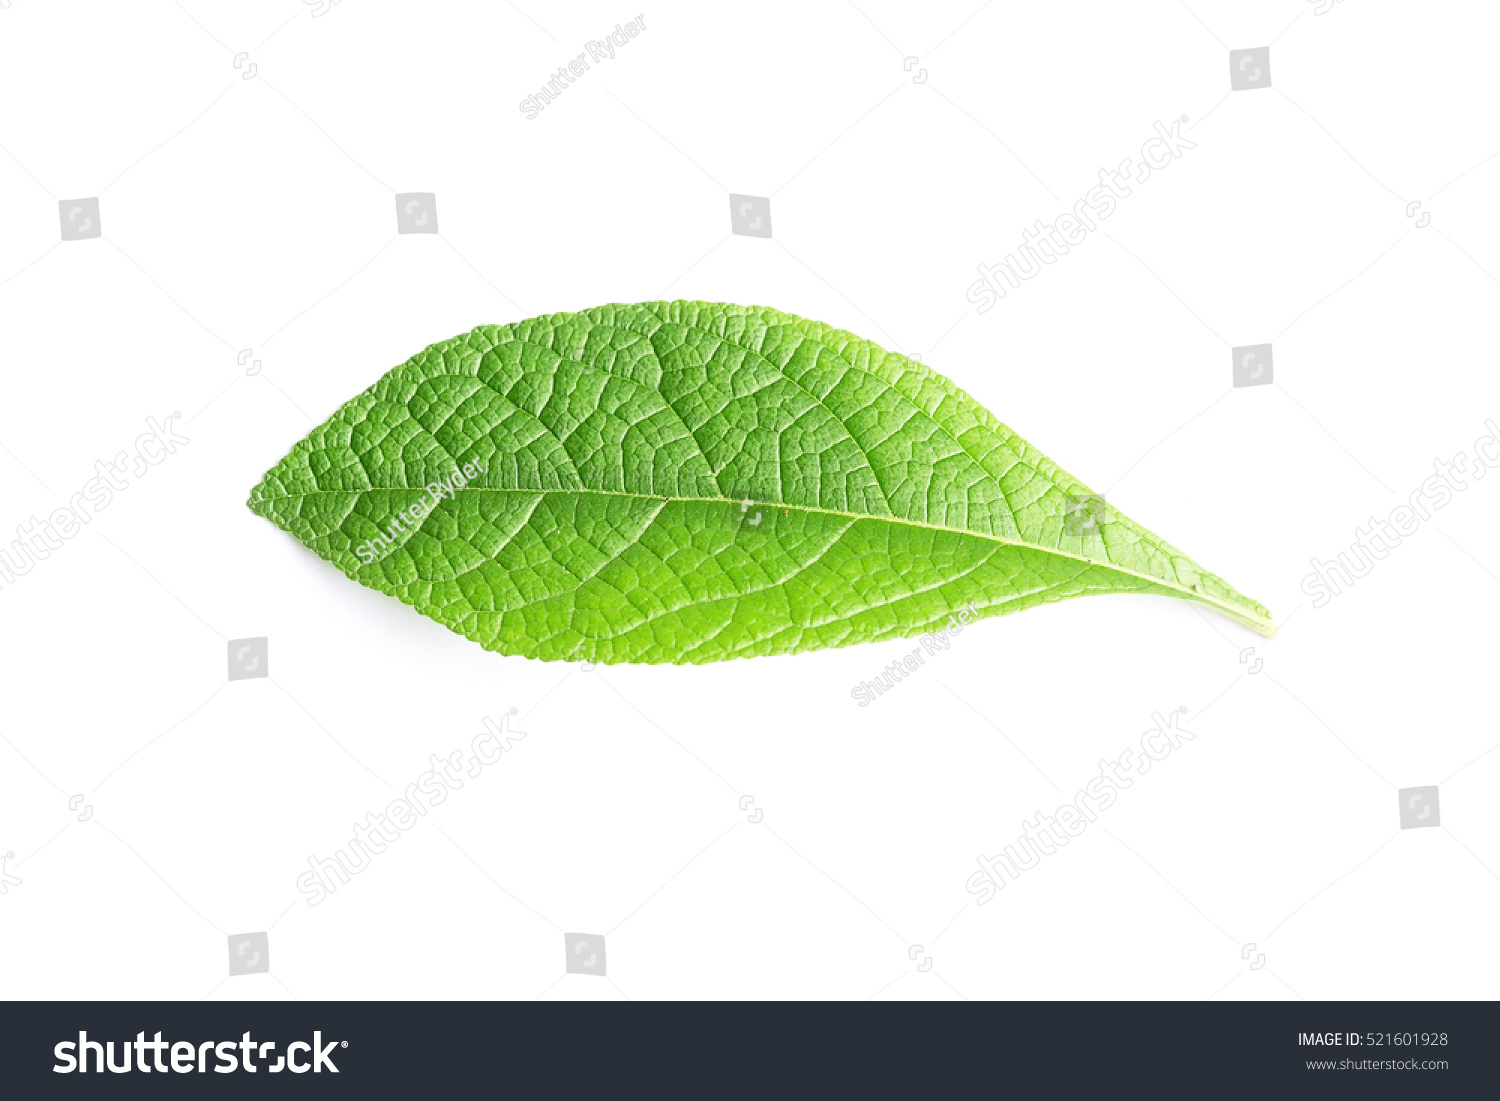 Edit Images Free Online - Green leaf | Shutterstock Editor